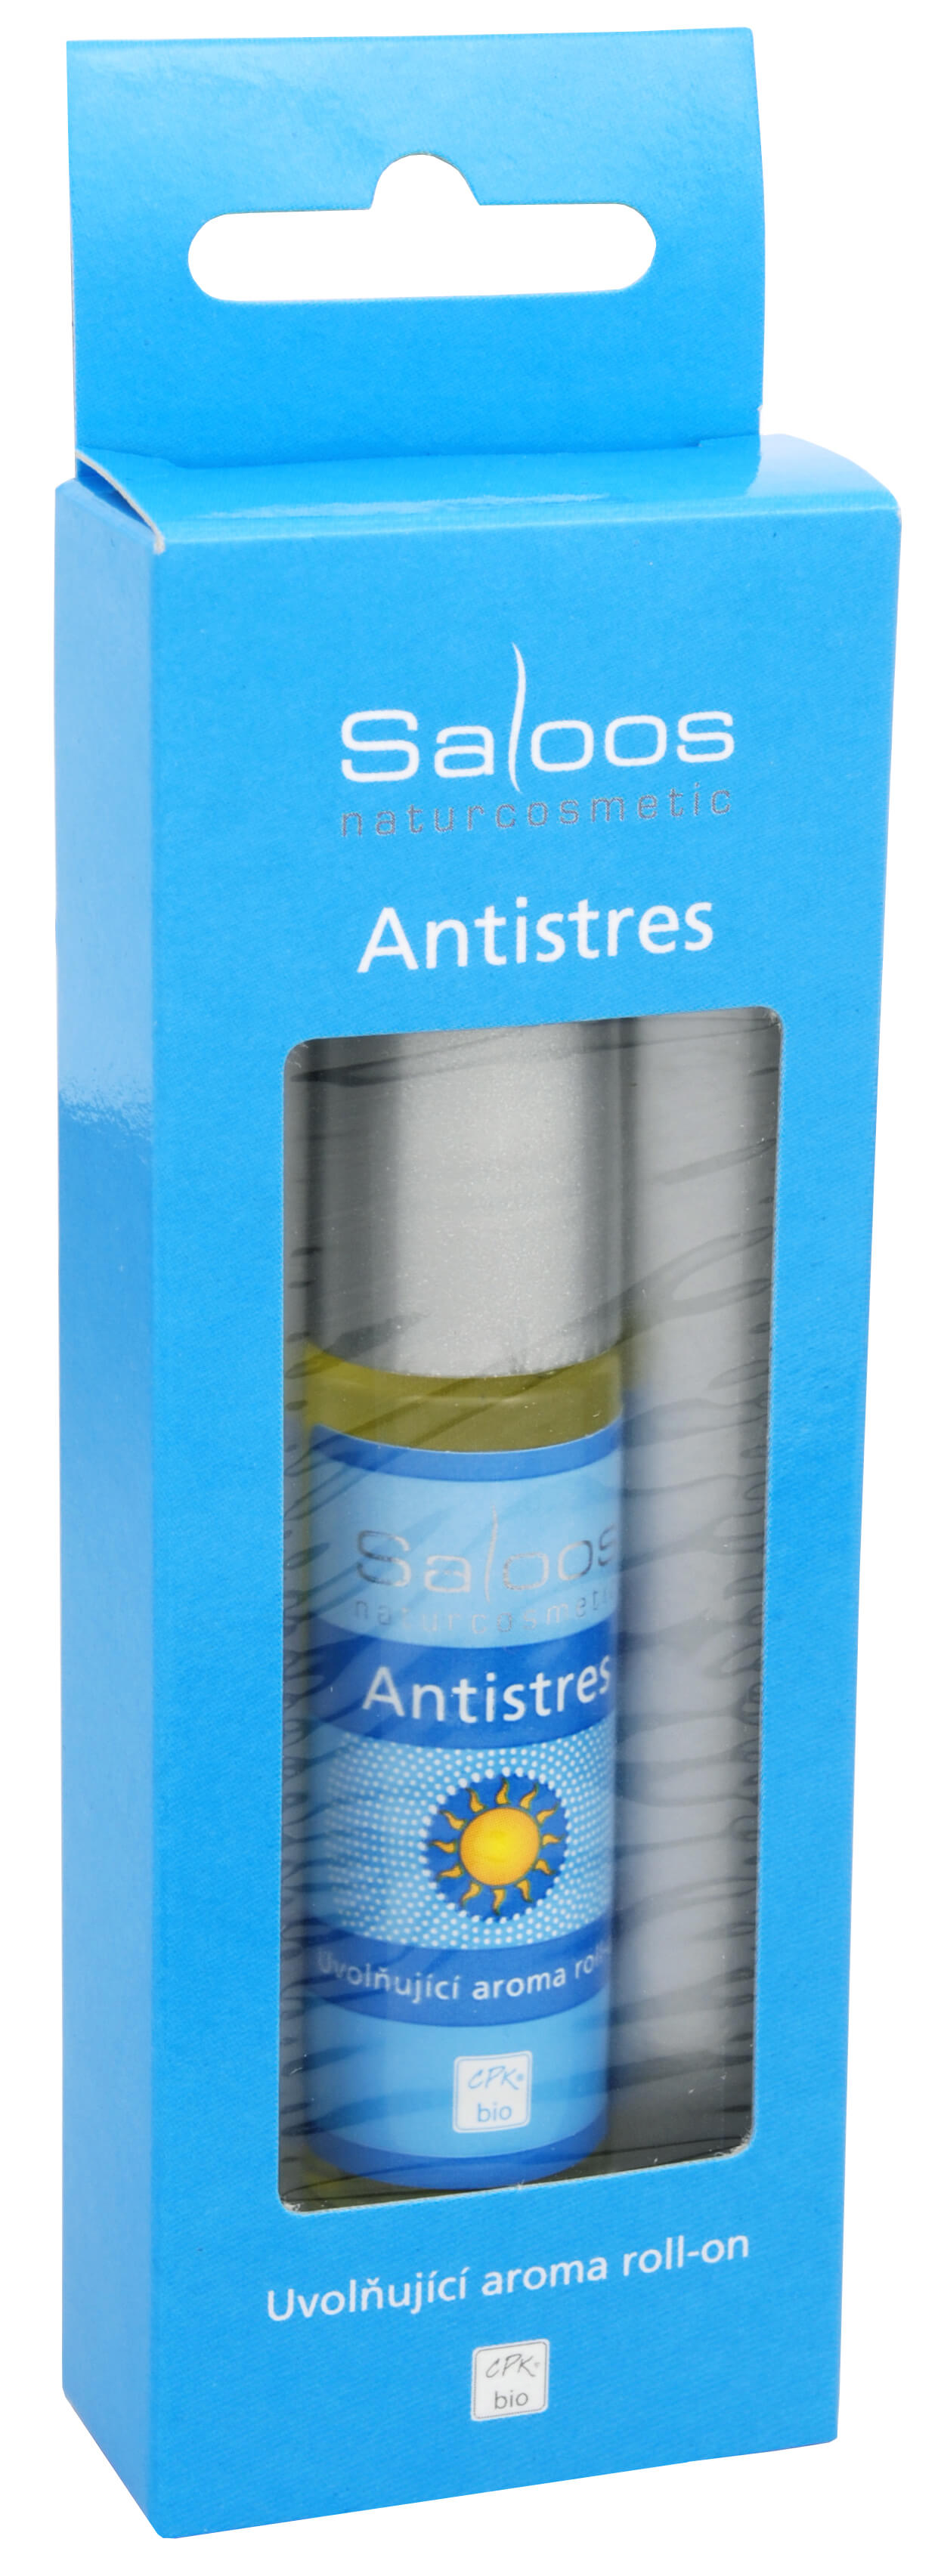 Zobrazit detail výrobku Saloos Bio Aroma roll-on - Antistres 9 ml + 2 měsíce na vrácení zboží